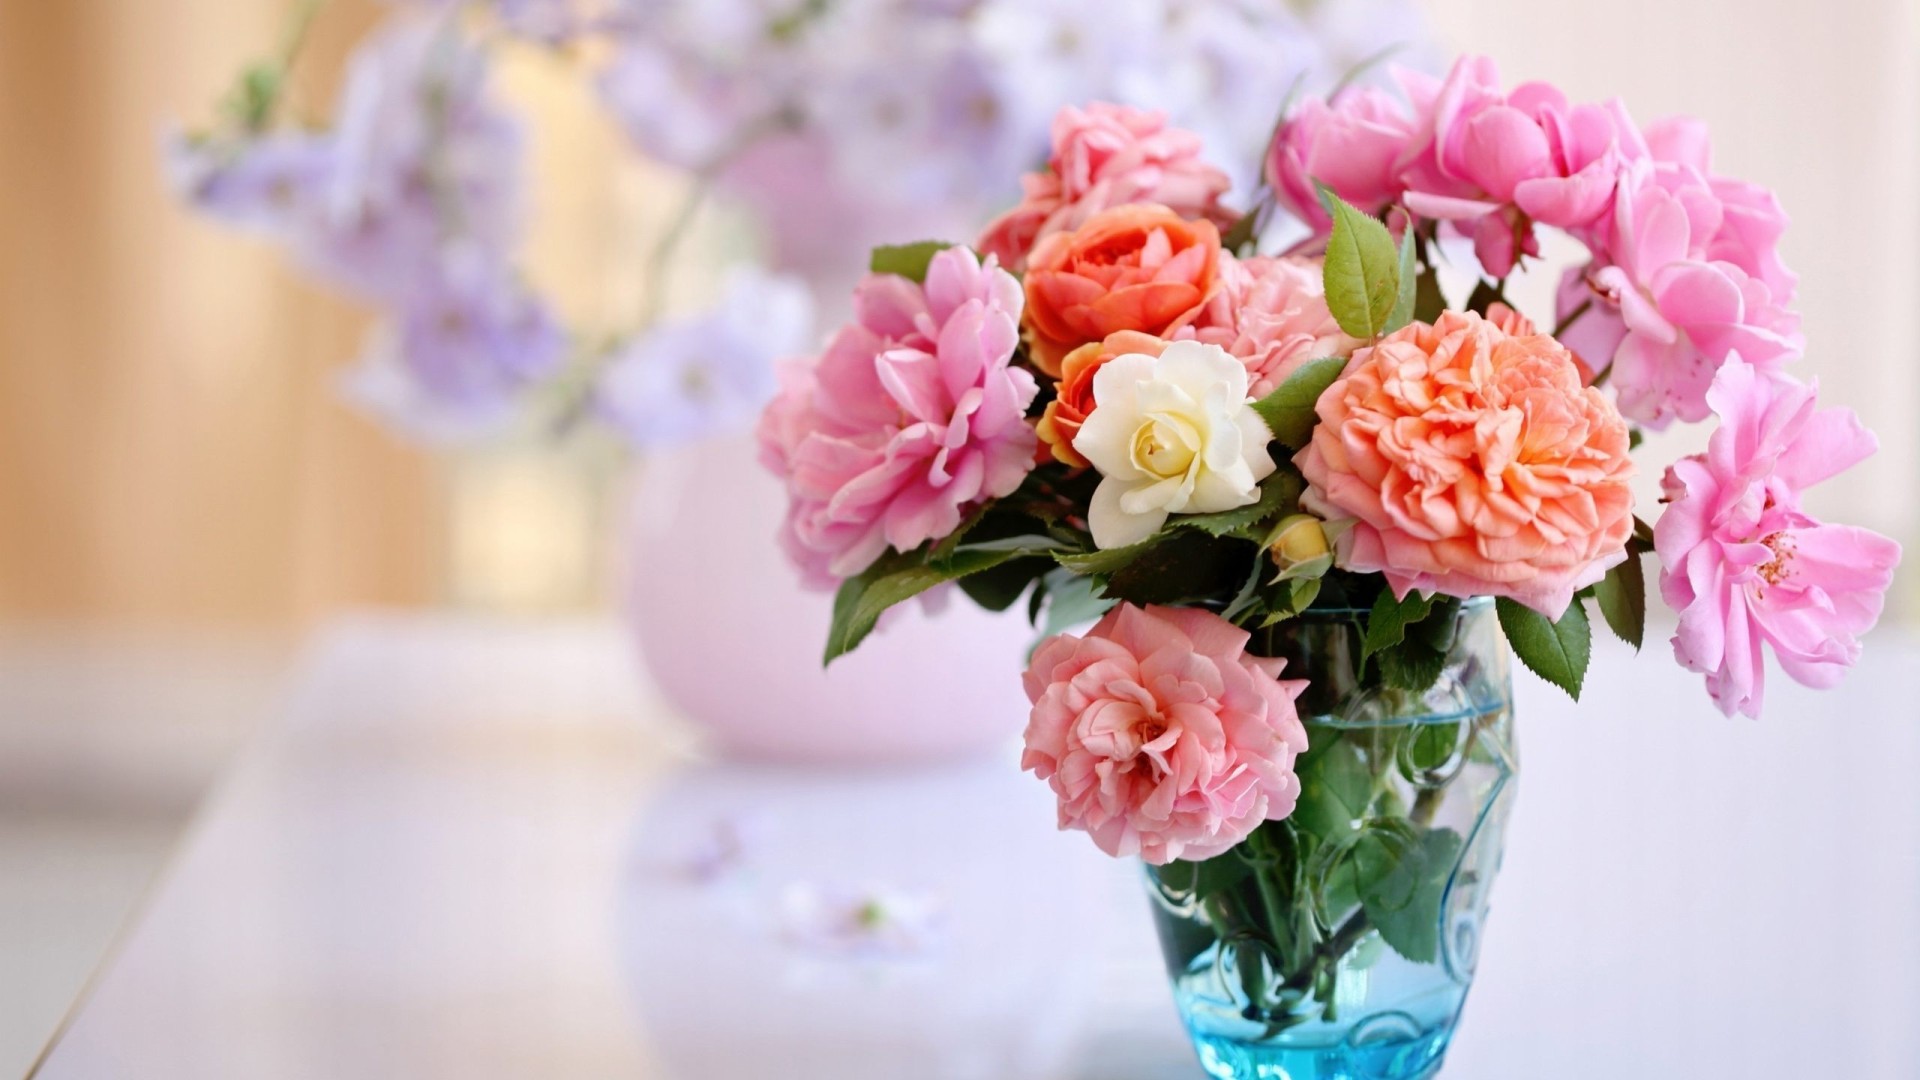 Download mobile wallpaper Flower, Vase, Spring, Pastel, Man Made, Pink Flower, Orange Flower for free.